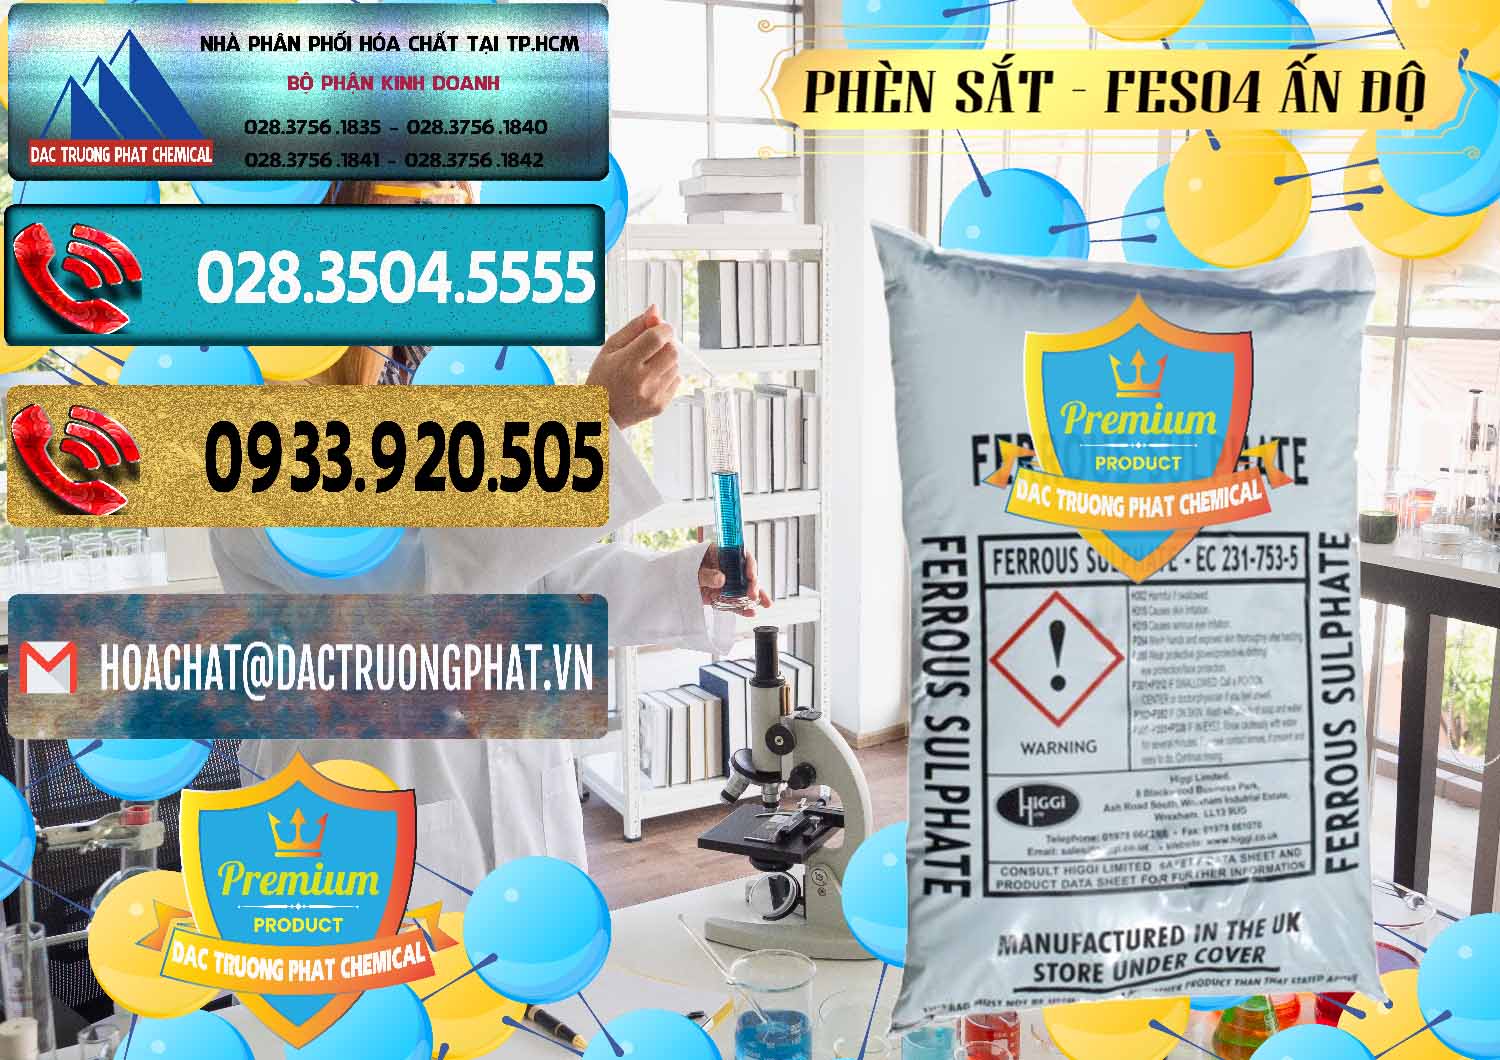 Đơn vị kinh doanh ( bán ) Phèn Sắt - FeSO4.7H2O Ấn Độ India - 0354 - Nơi chuyên phân phối _ cung ứng hóa chất tại TP.HCM - hoachatdetnhuom.com